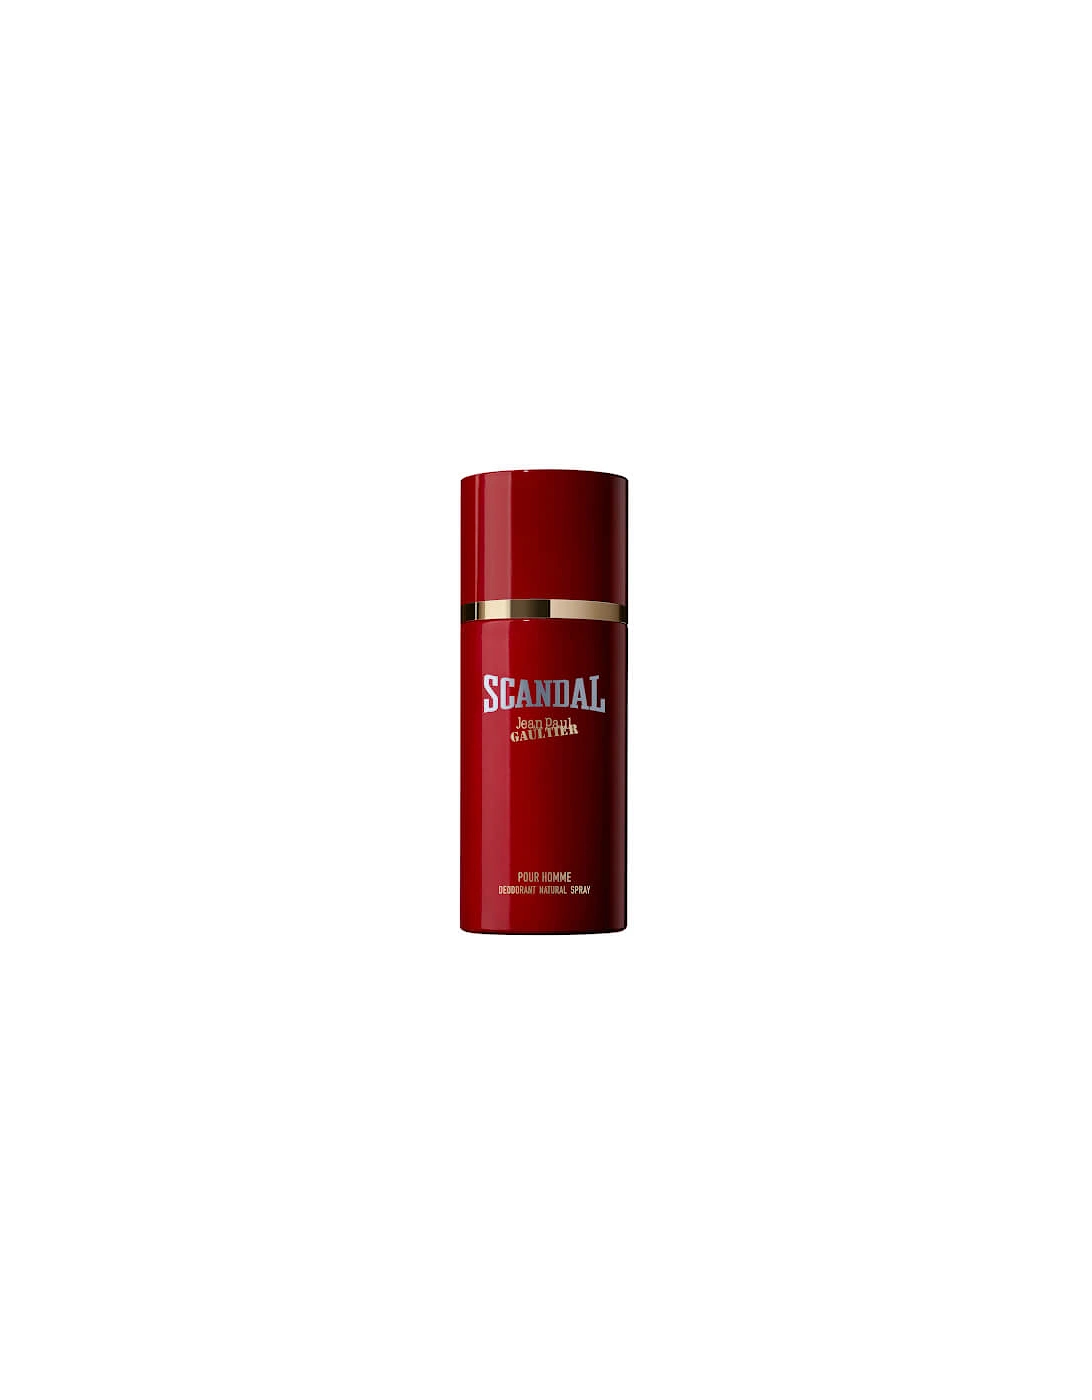 Scandal Pour Homme Eau de Toilette Deodorant Spray 150ml, 2 of 1